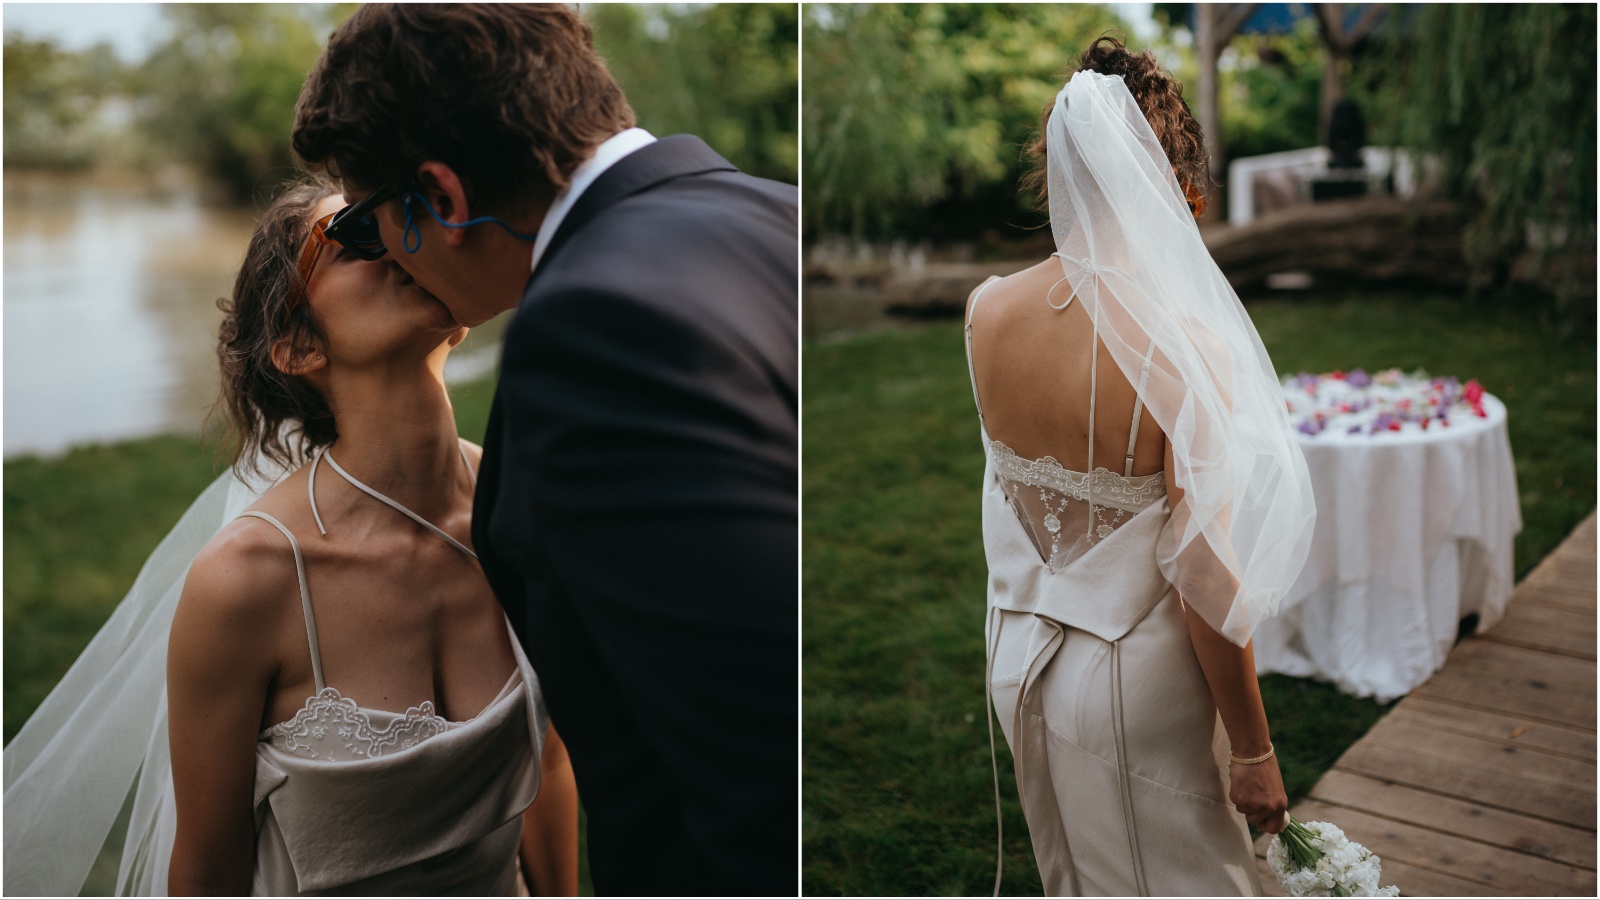 Sasvim (ne)obično venčanje fotografkinje Aleksandre Martinović u custom made venčanici Sande Simone